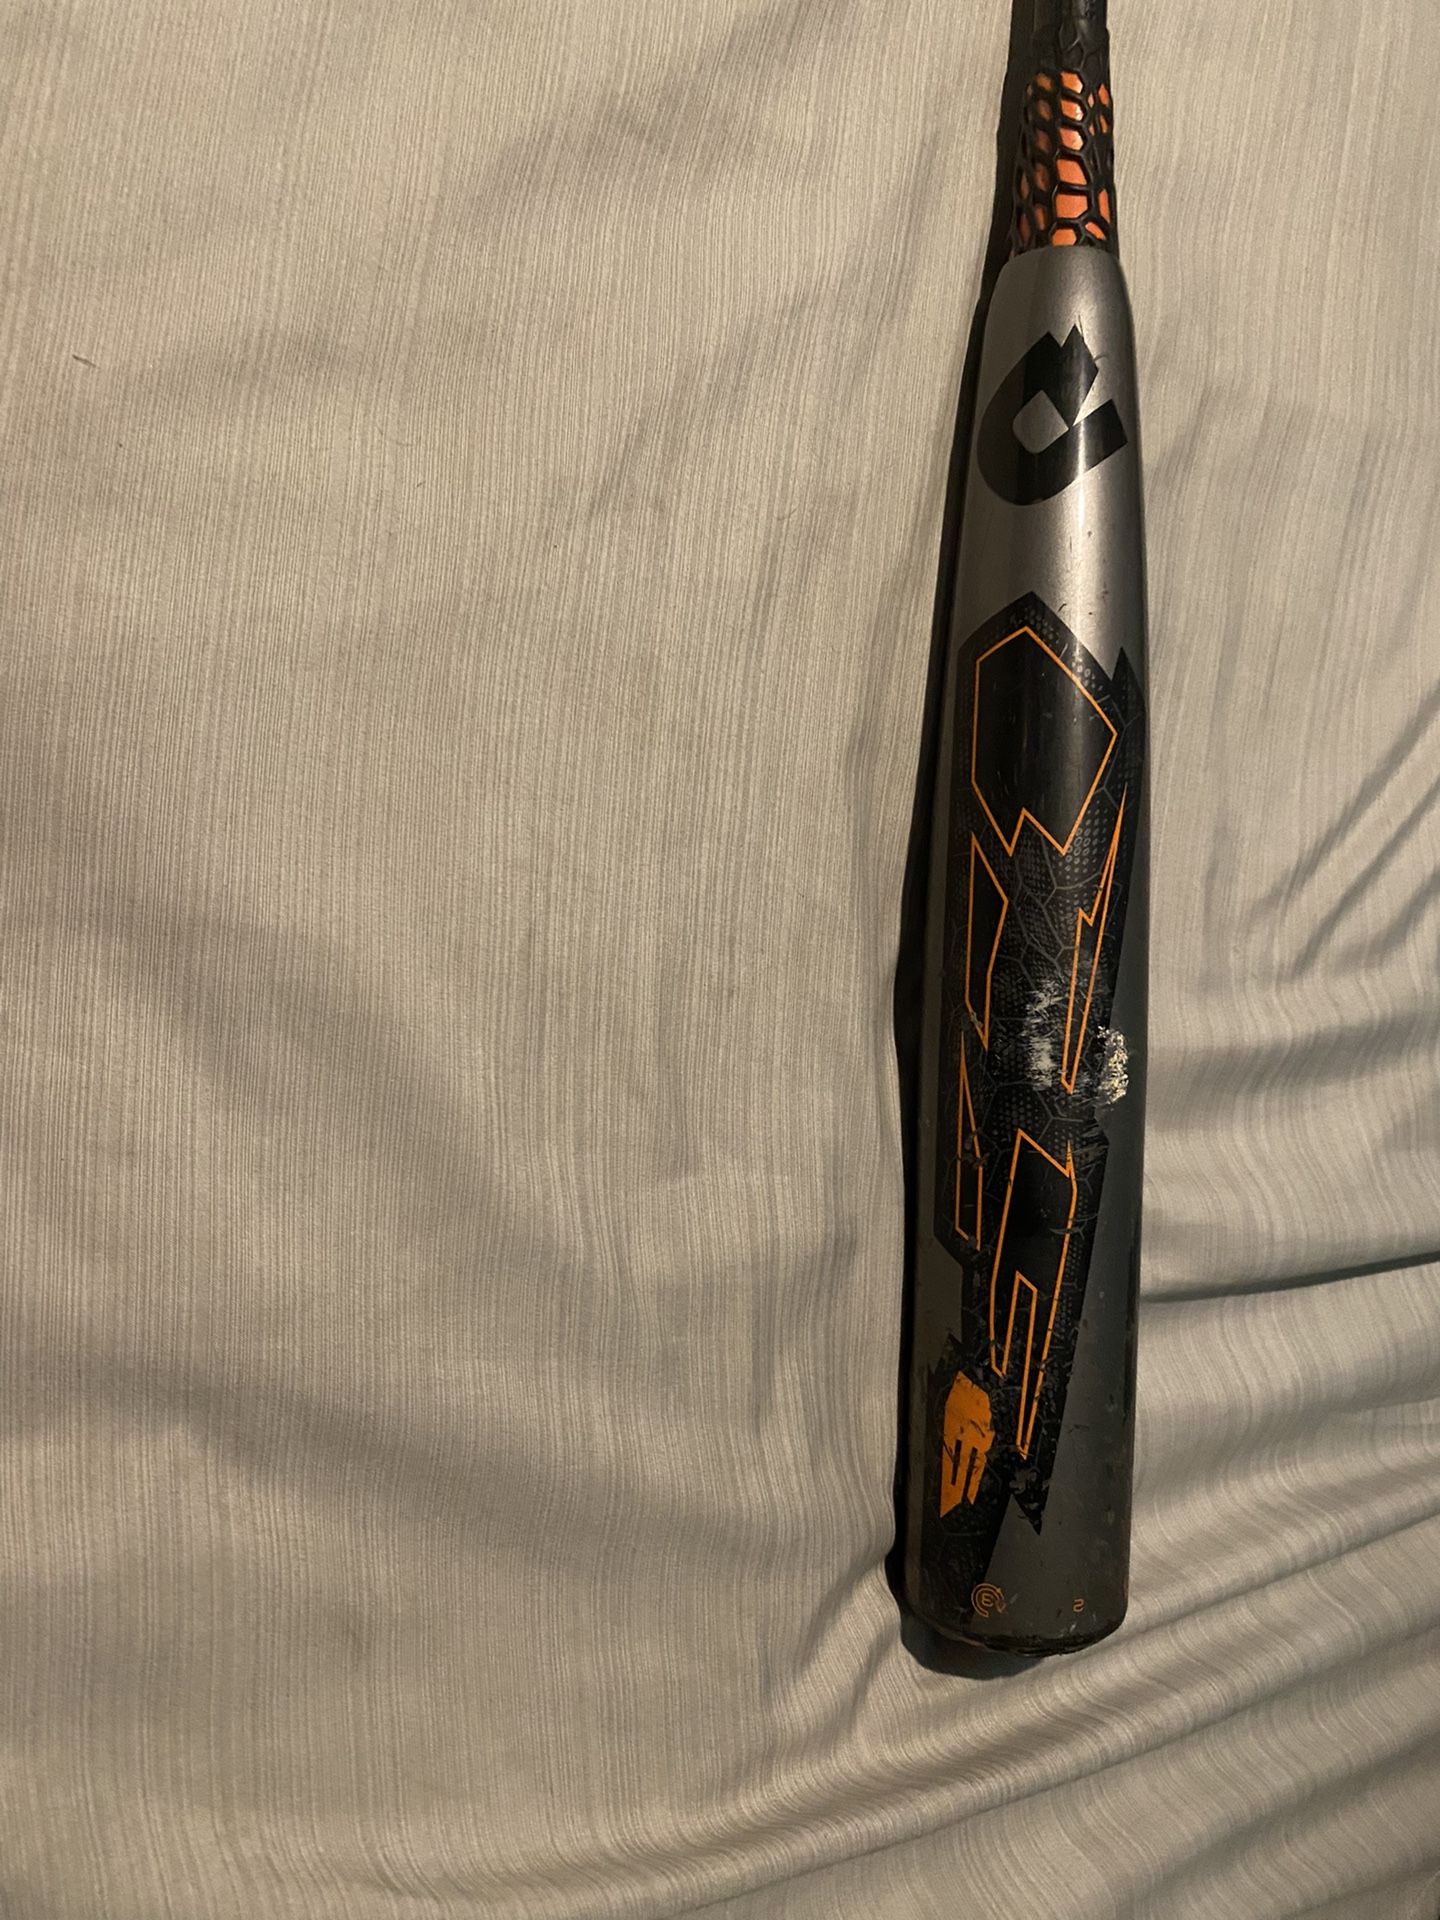 Demarini CF6 baseball bat